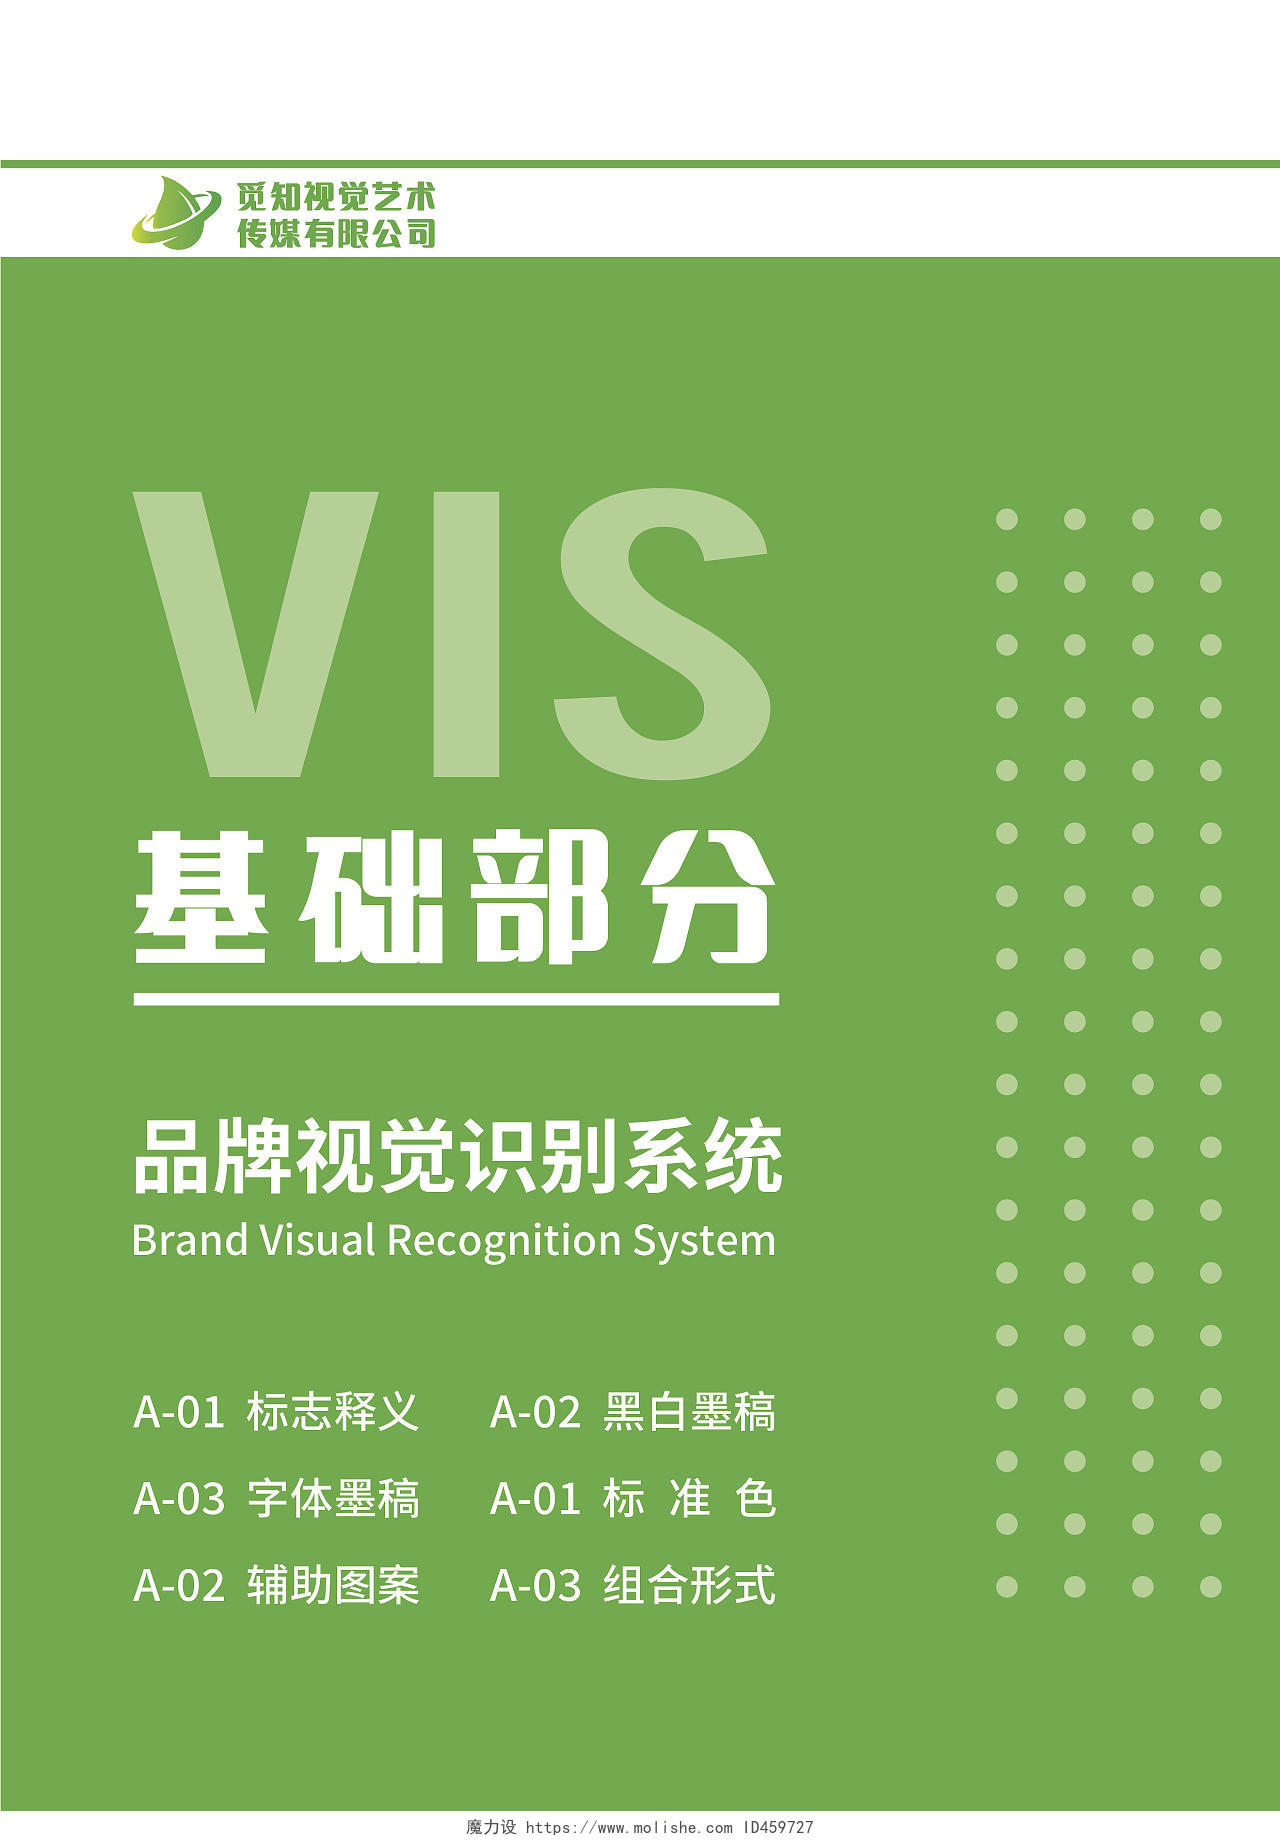 绿色VI手册公司企业品牌手册宣传册模板vis视觉识别系统vis视觉识别系统手册